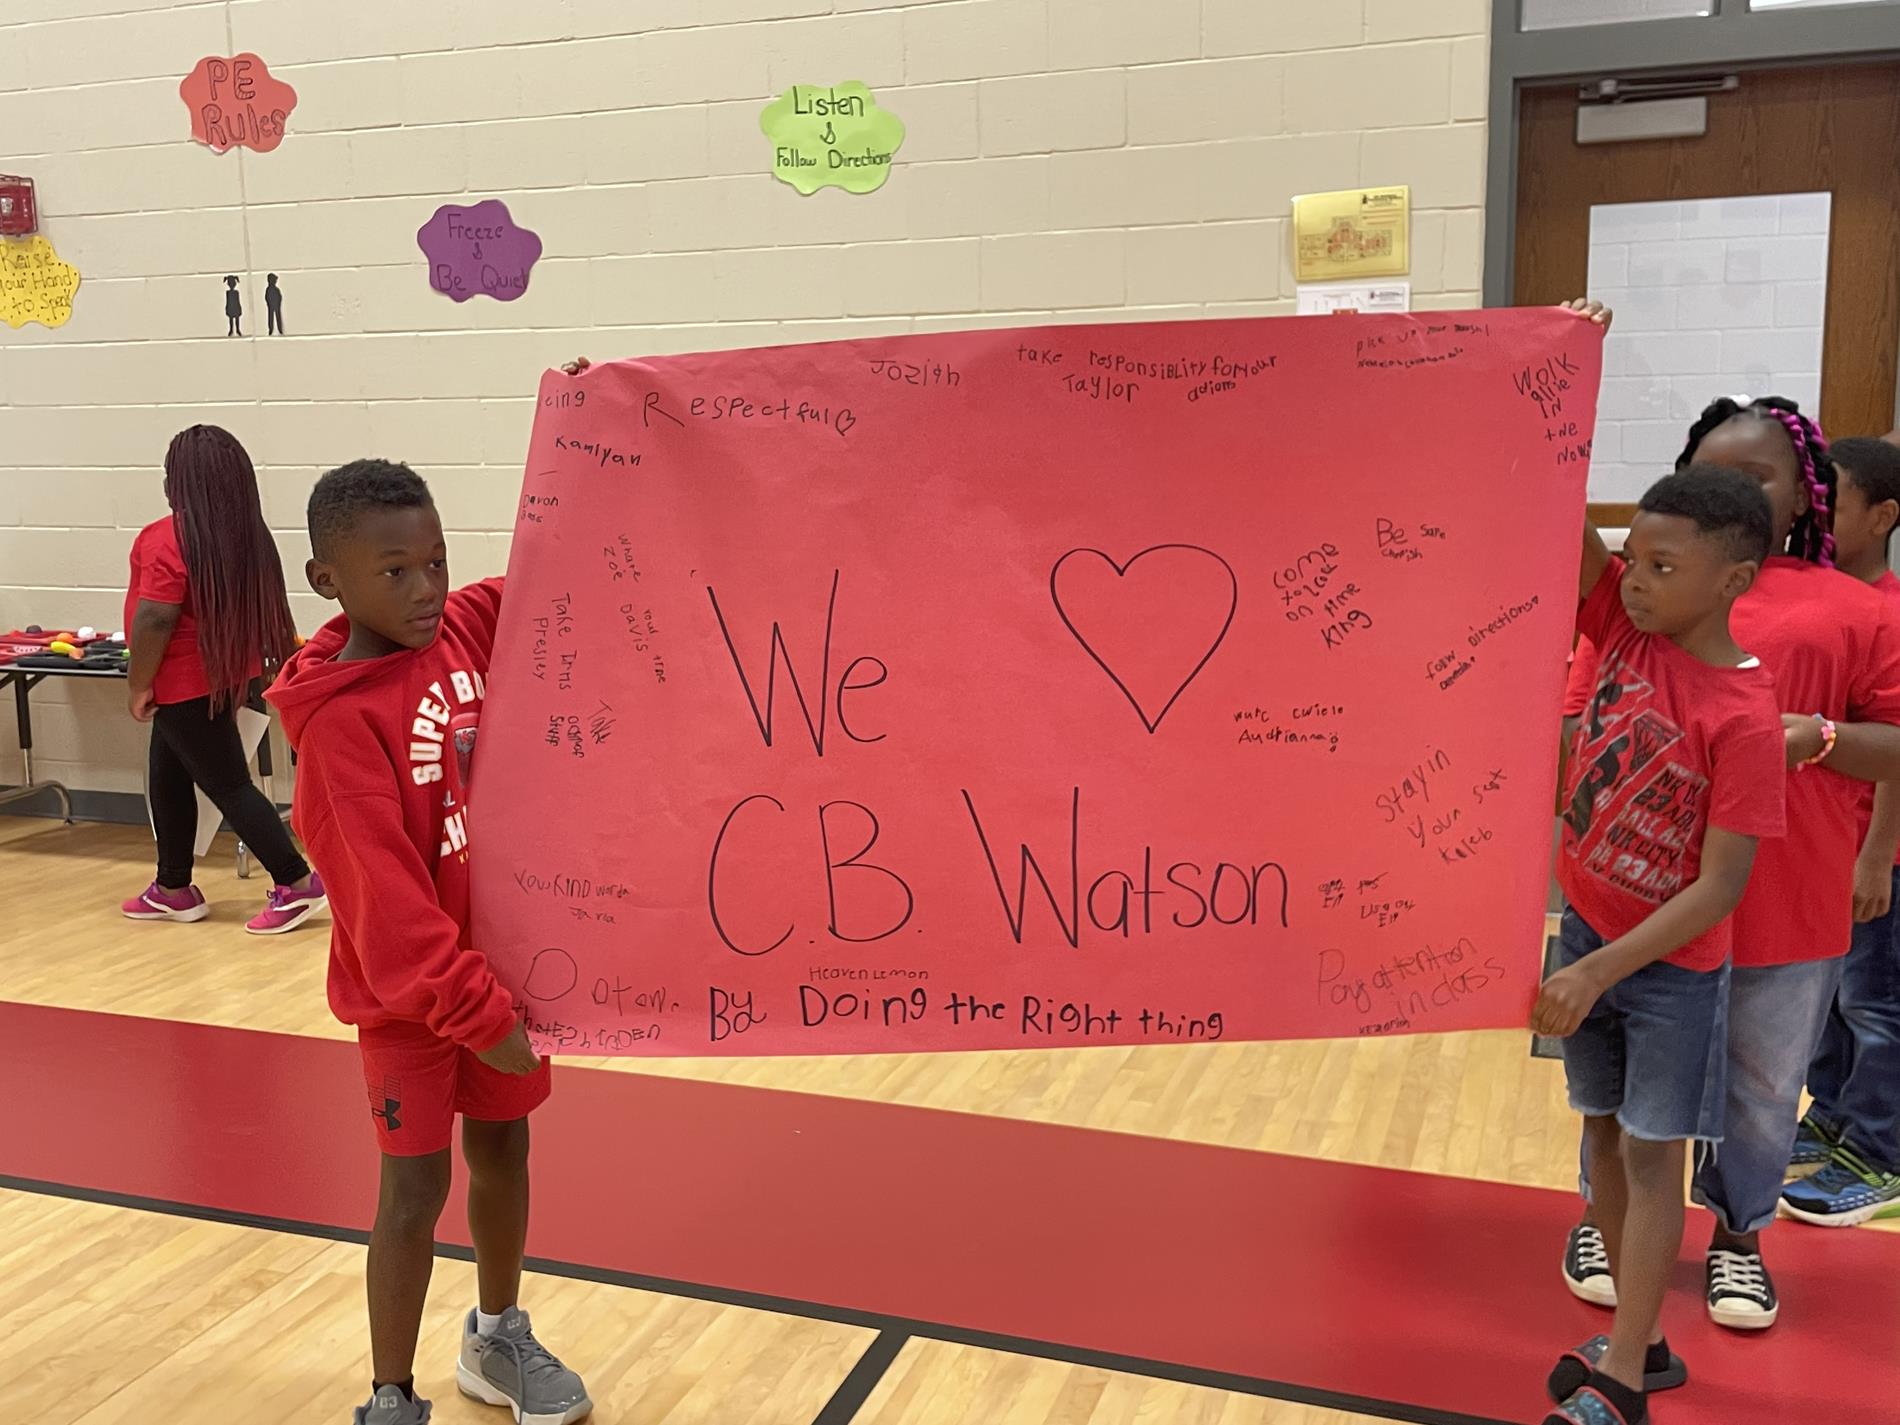 We LOVE CB Watson!